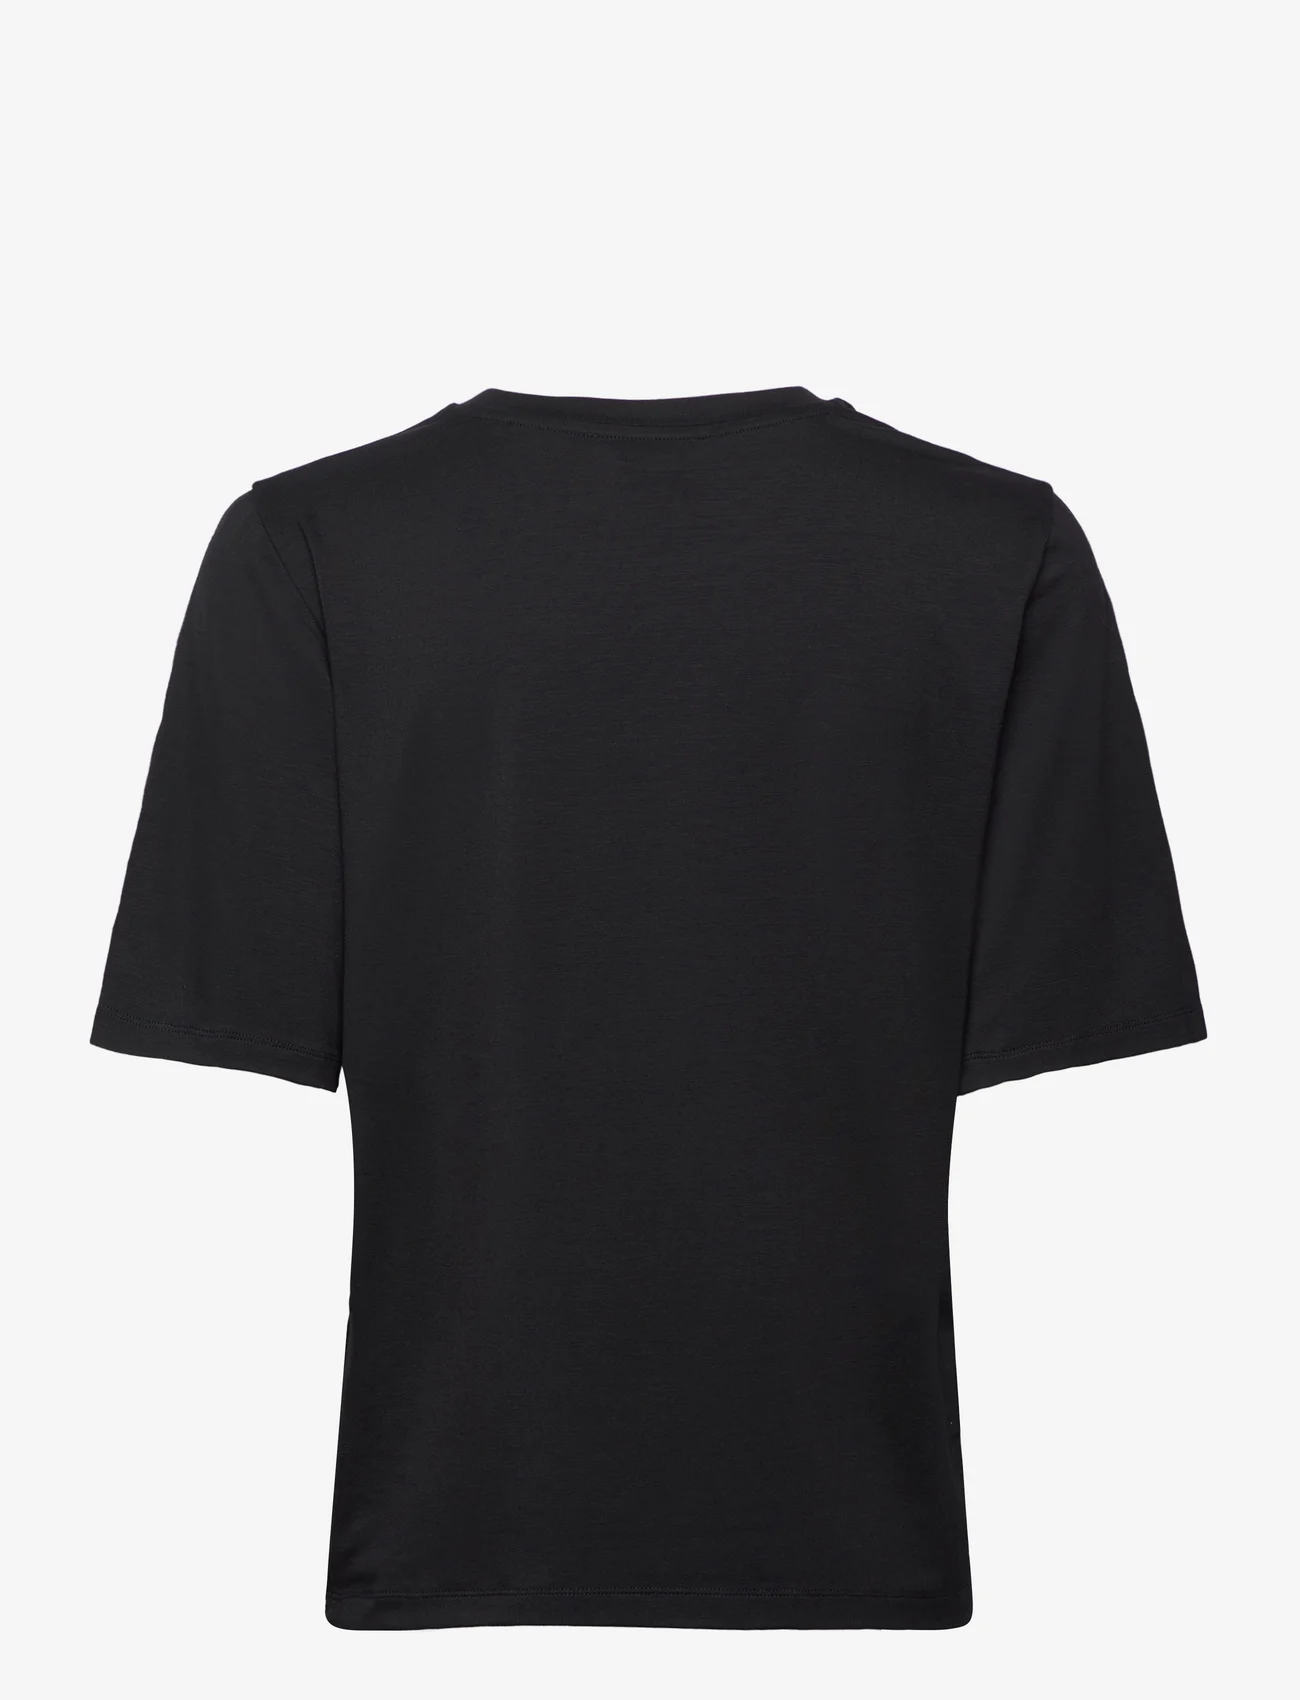 Residus - BOTTAS TEE - marškinėliai - black - 1